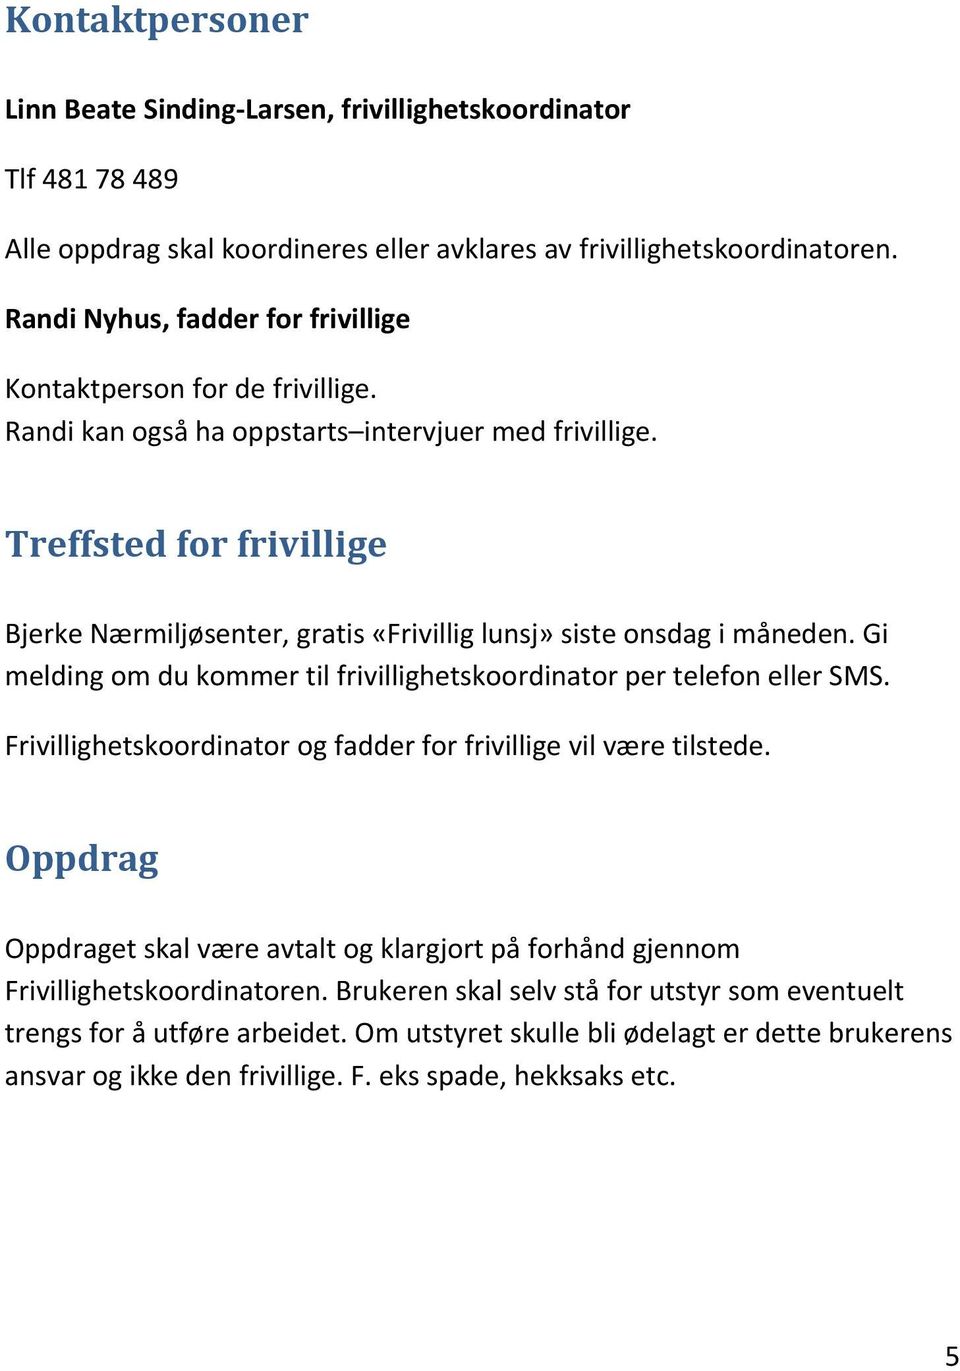 Treffstedforfrivillige BjerkeNærmiljøsenter,gratis«Frivilliglunsj»sisteonsdagimåneden.Gi meldingomdukommertilfrivillighetskoordinatorpertelefonellersms.